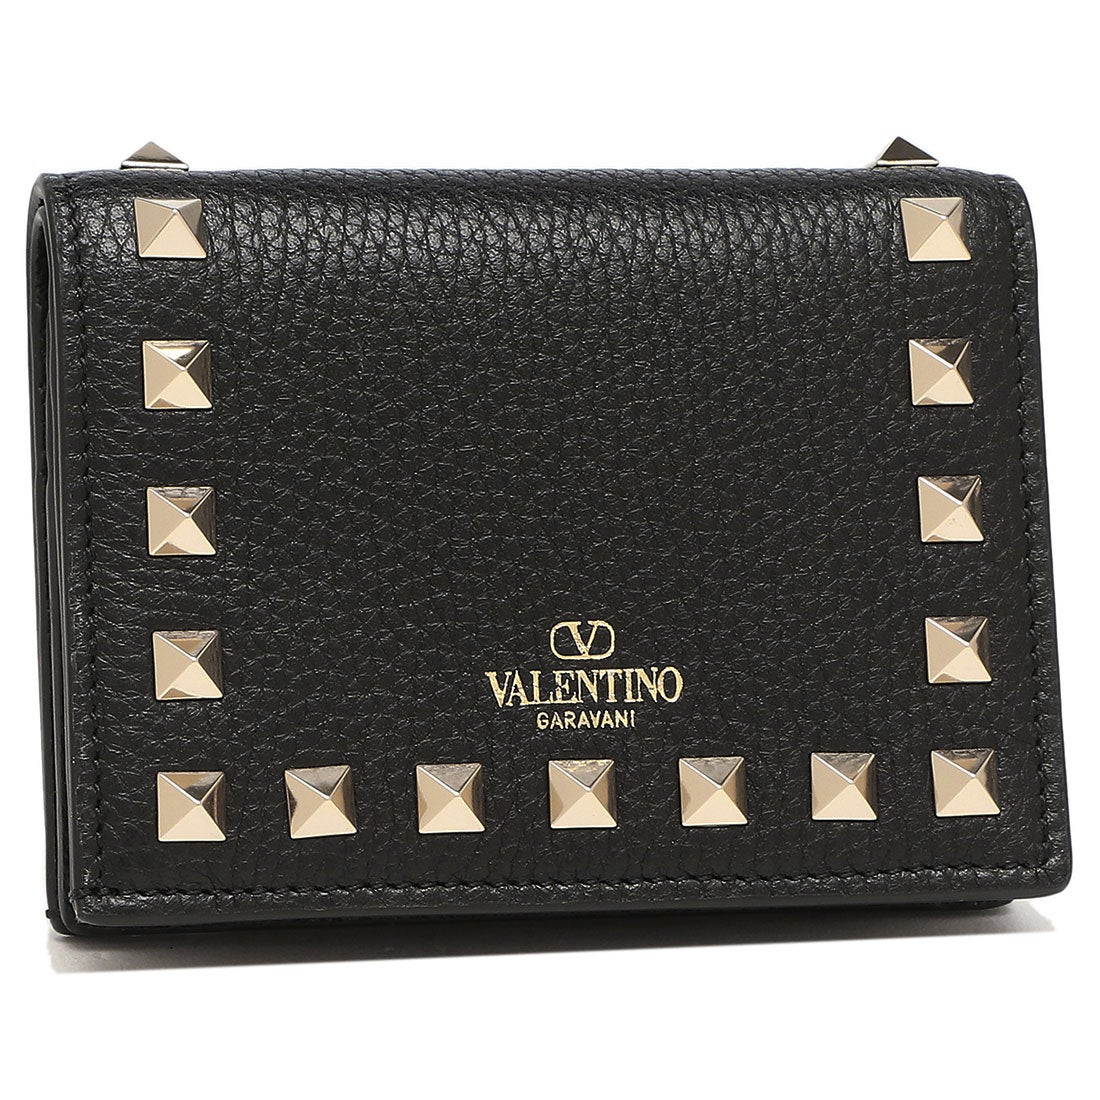 ファッション小物VALENTINO 財布 - 長財布